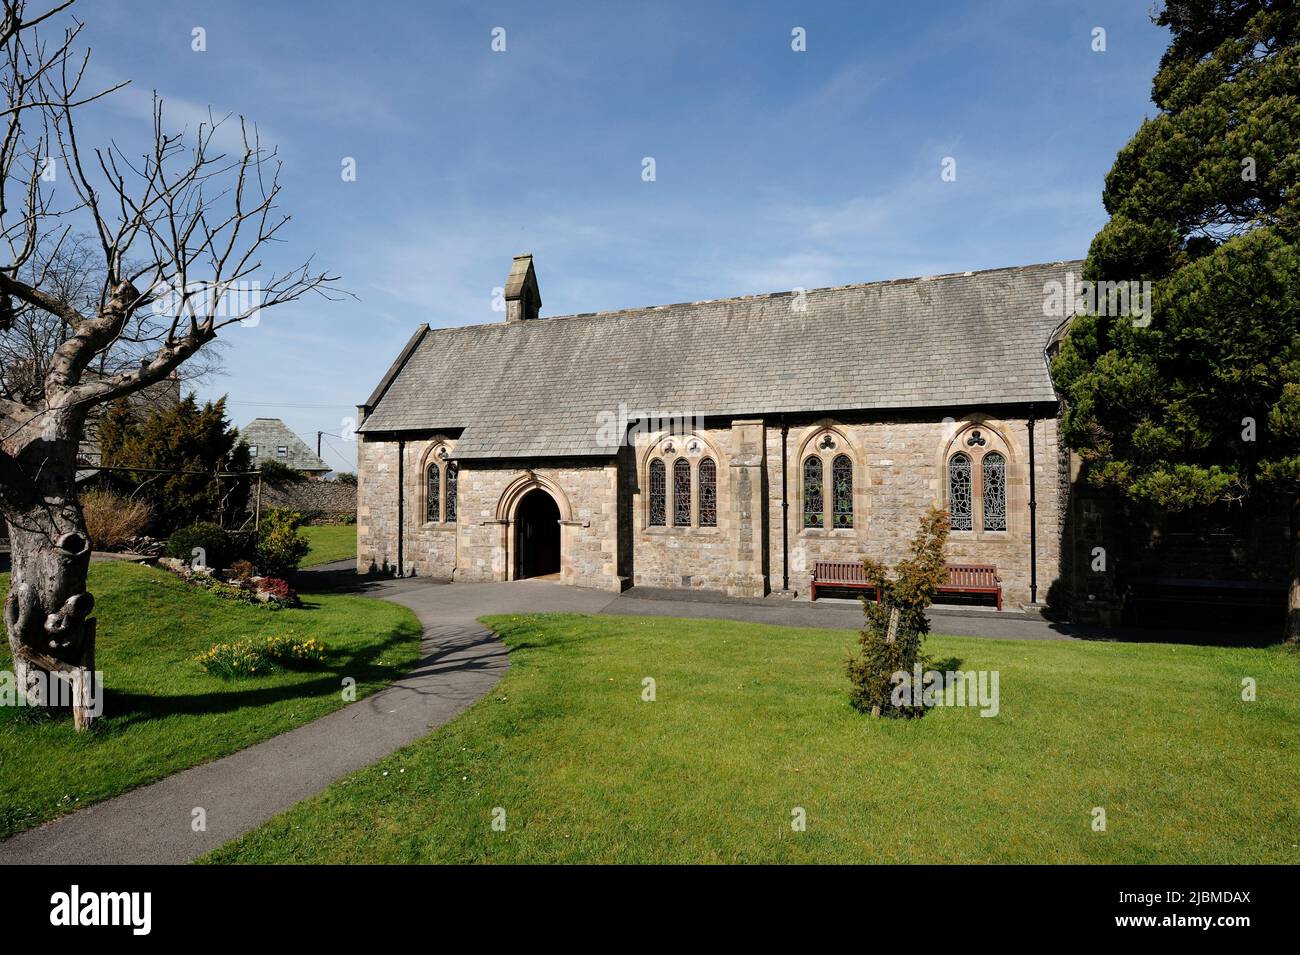 La paroisse anglicane St James Church dans le village d'Arnside Cumbria Angleterre Banque D'Images